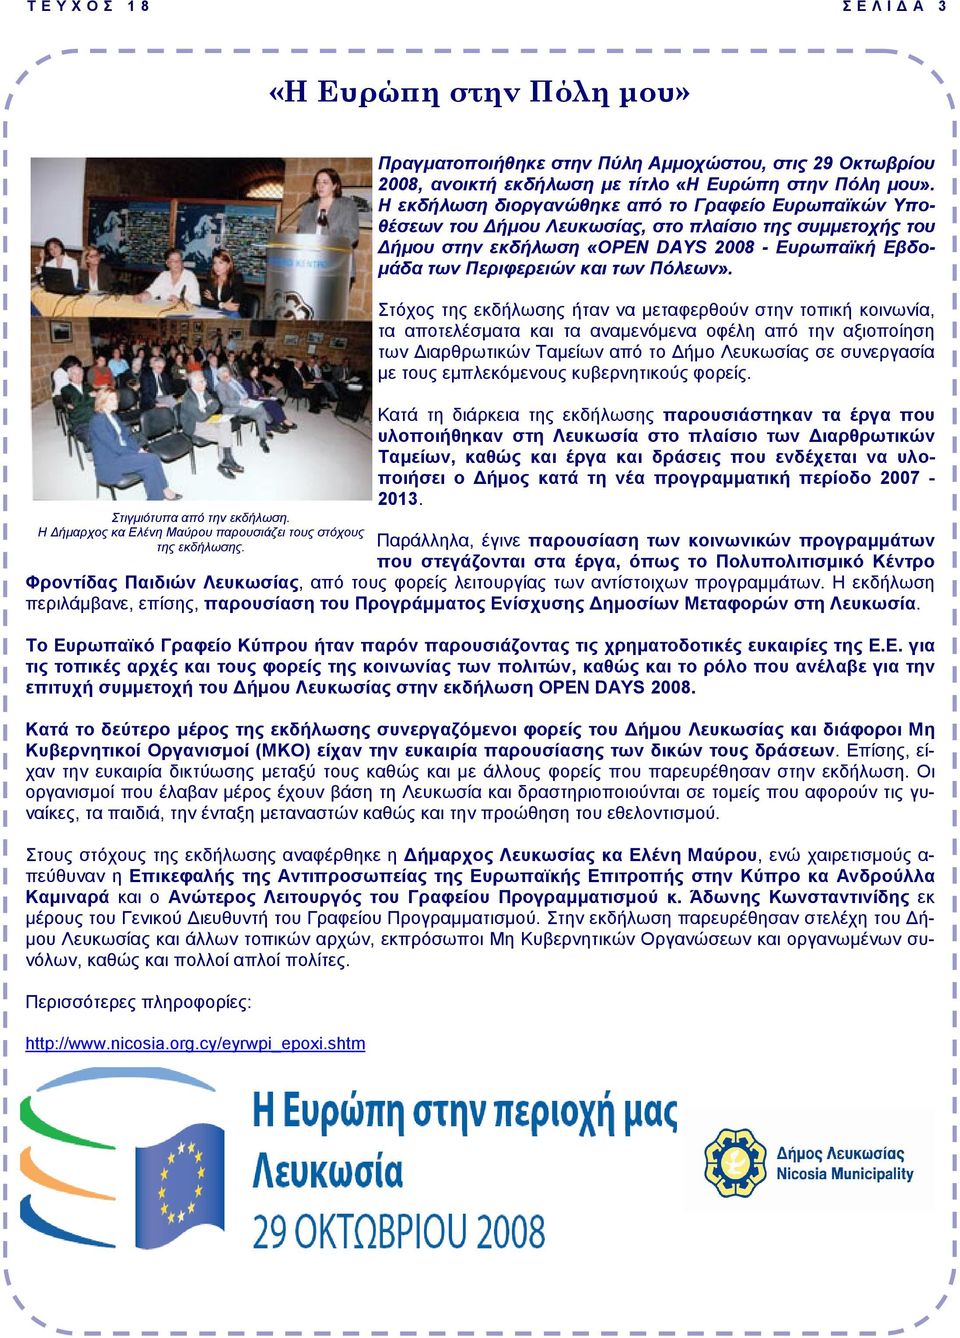 Η εκδήλωση διοργανώθηκε από το Γραφείο Ευρωπαϊκών Υποθέσεων του ήµου Λευκωσίας, στο πλαίσιο της συµµετοχής του ήµου στην εκδήλωση «OPEN DAYS 2008 - Ευρωπαϊκή Εβδο- µάδα των Περιφερειών και των